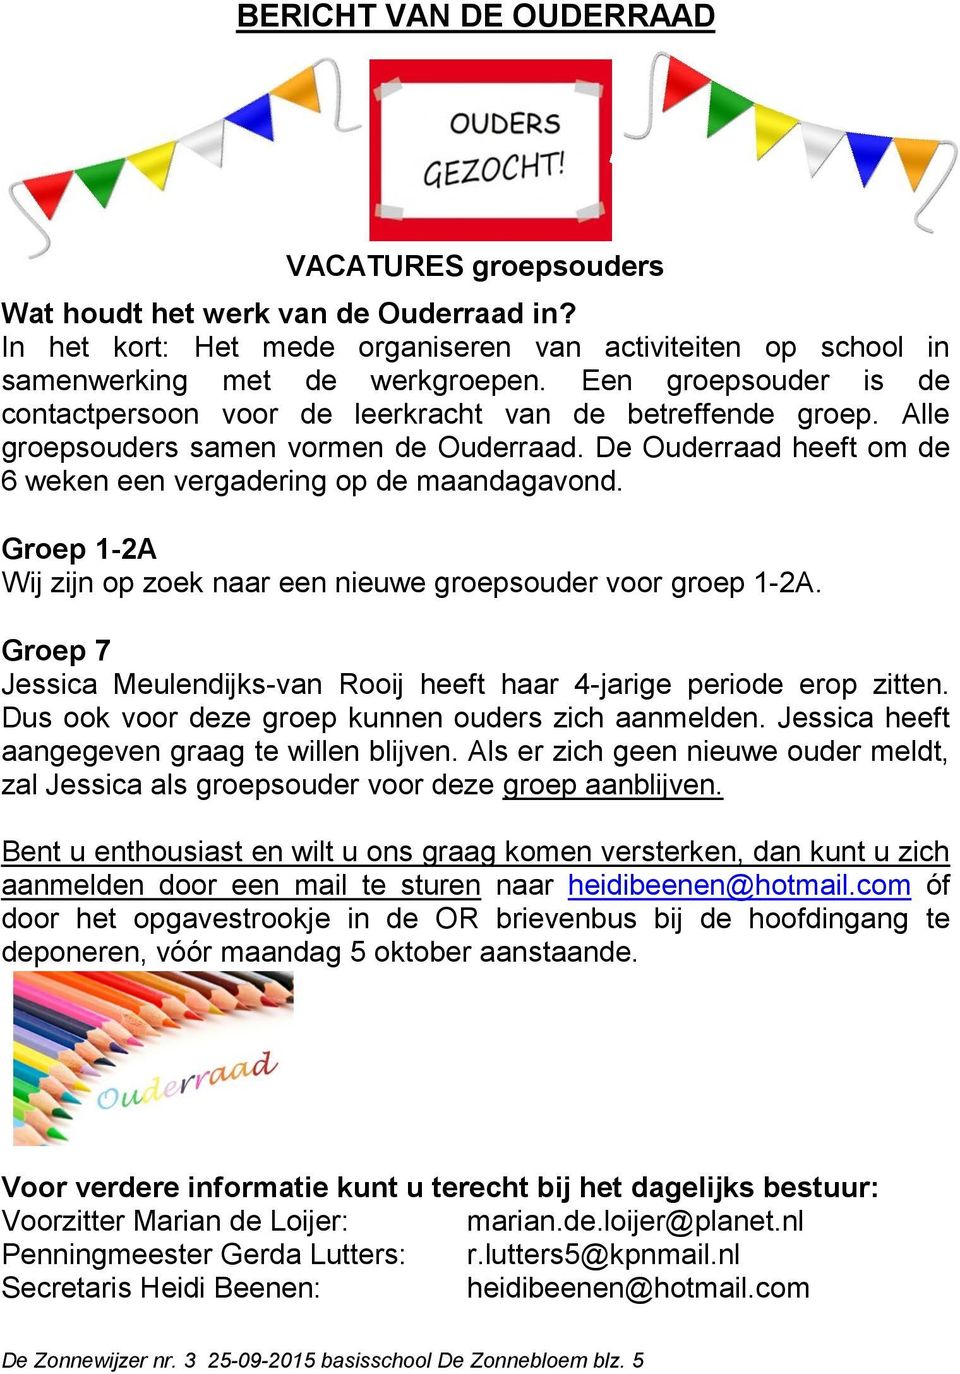 Groep 1-2A Wij zijn op zoek naar een nieuwe groepsouder voor groep 1-2A. Groep 7 Jessica Meulendijks-van Rooij heeft haar 4-jarige periode erop zitten.